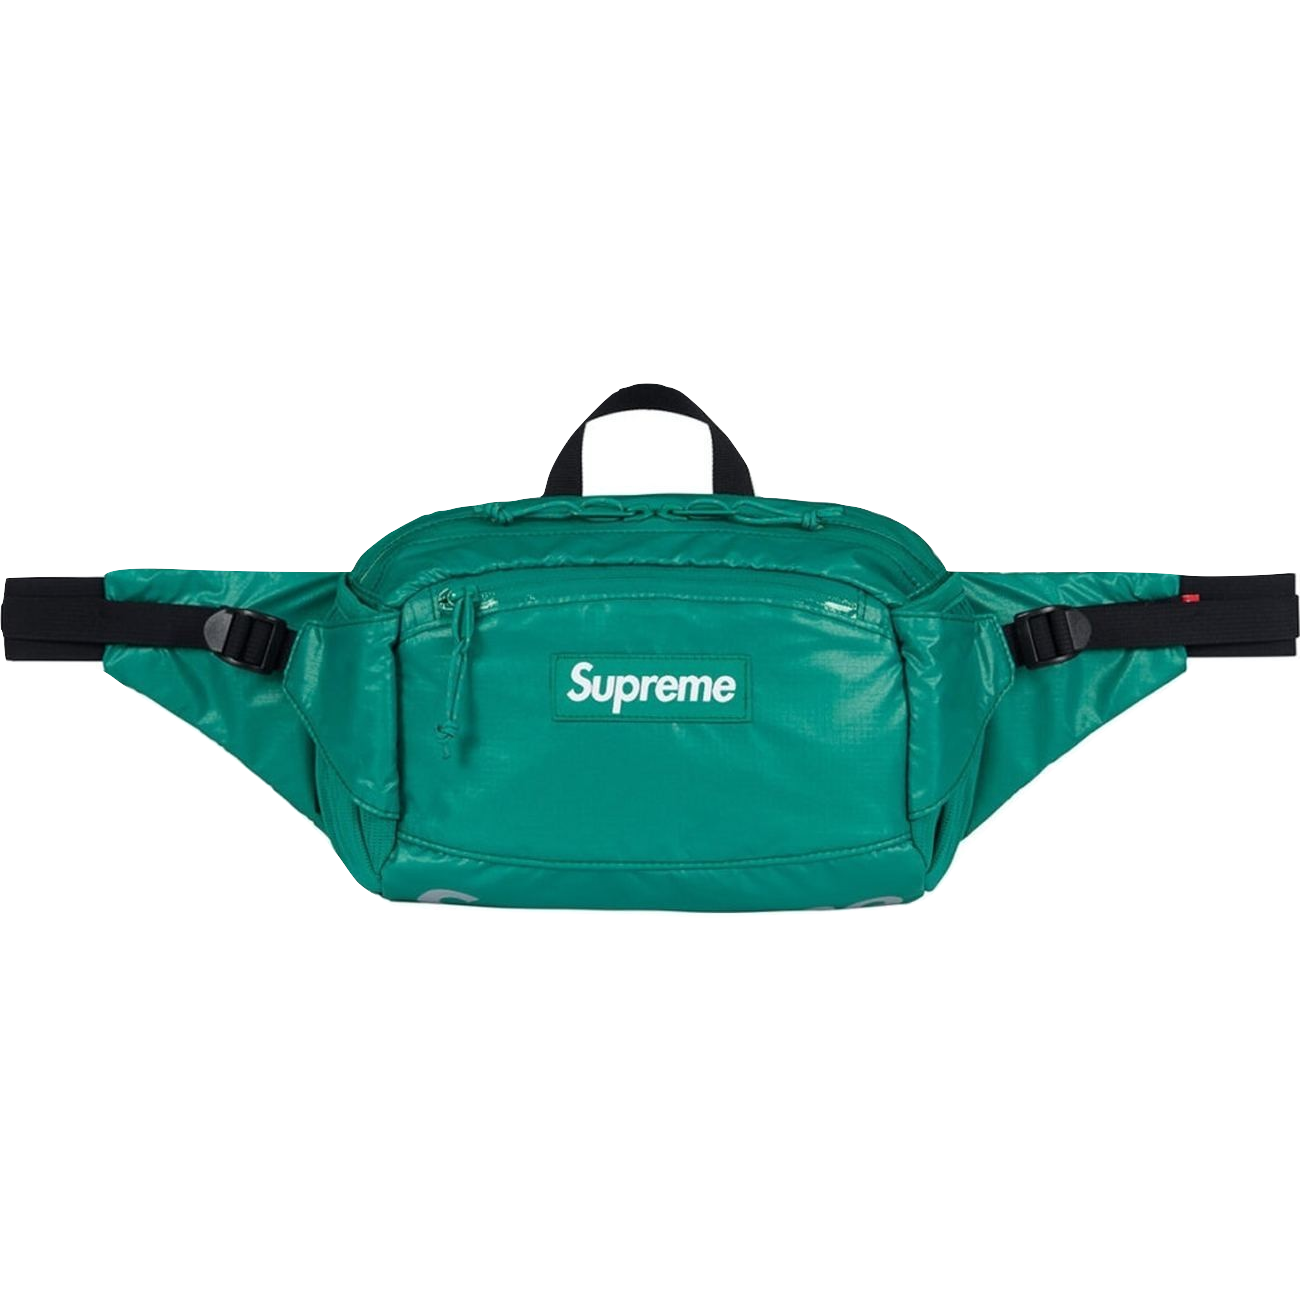 Supreme Waist Bag FW17 - Teal - Used